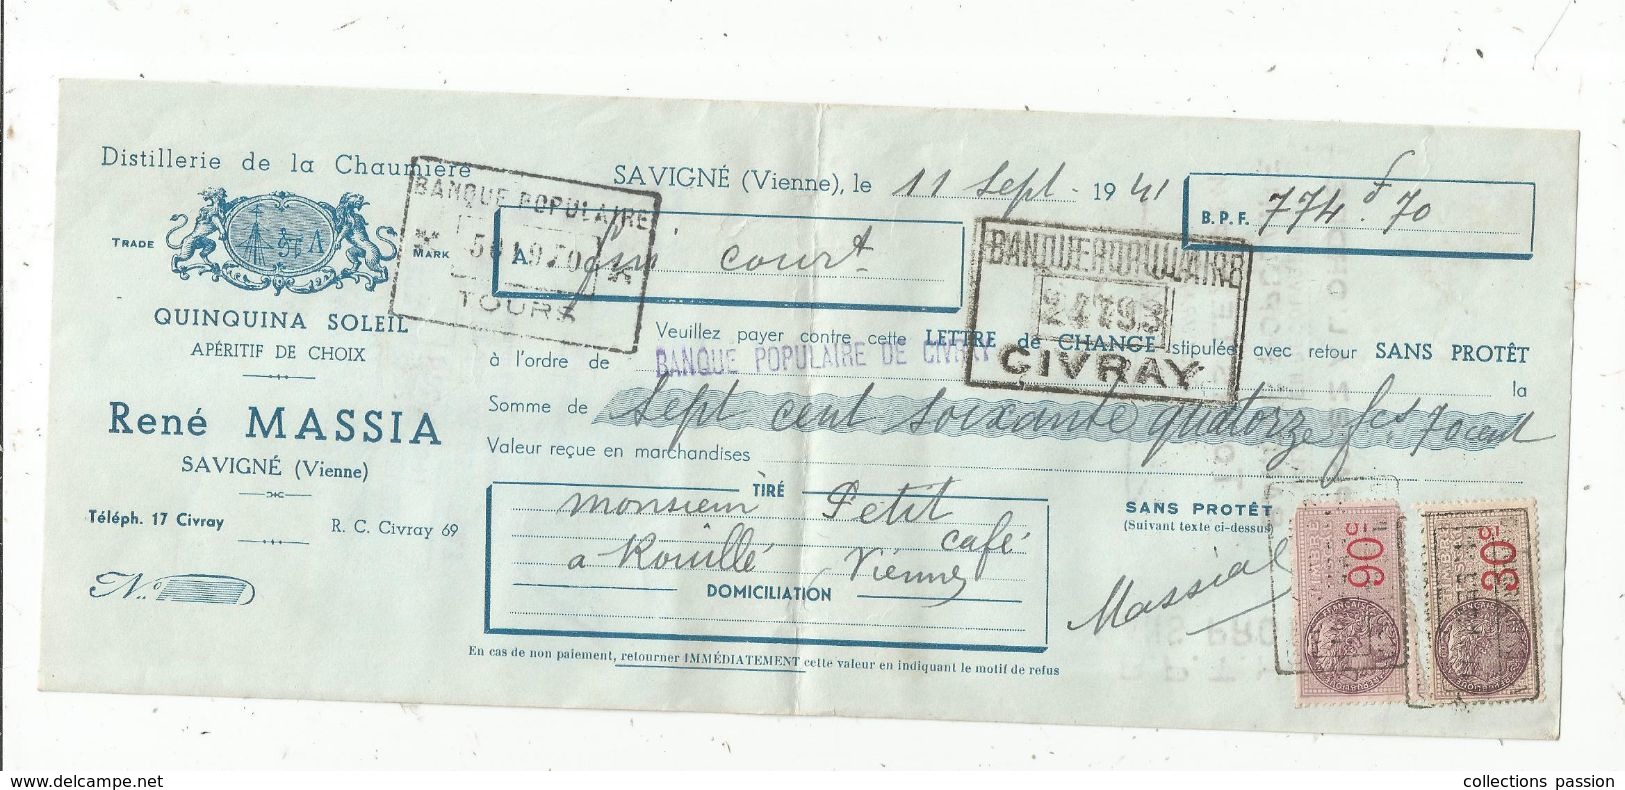 LETTRE DE CHANGE , 1941,distillerie De La Chaumière , Quinqina Soleil , R. MASSIA, Savigné , Vienne ,  Frais Fr : 1.45 E - Bills Of Exchange